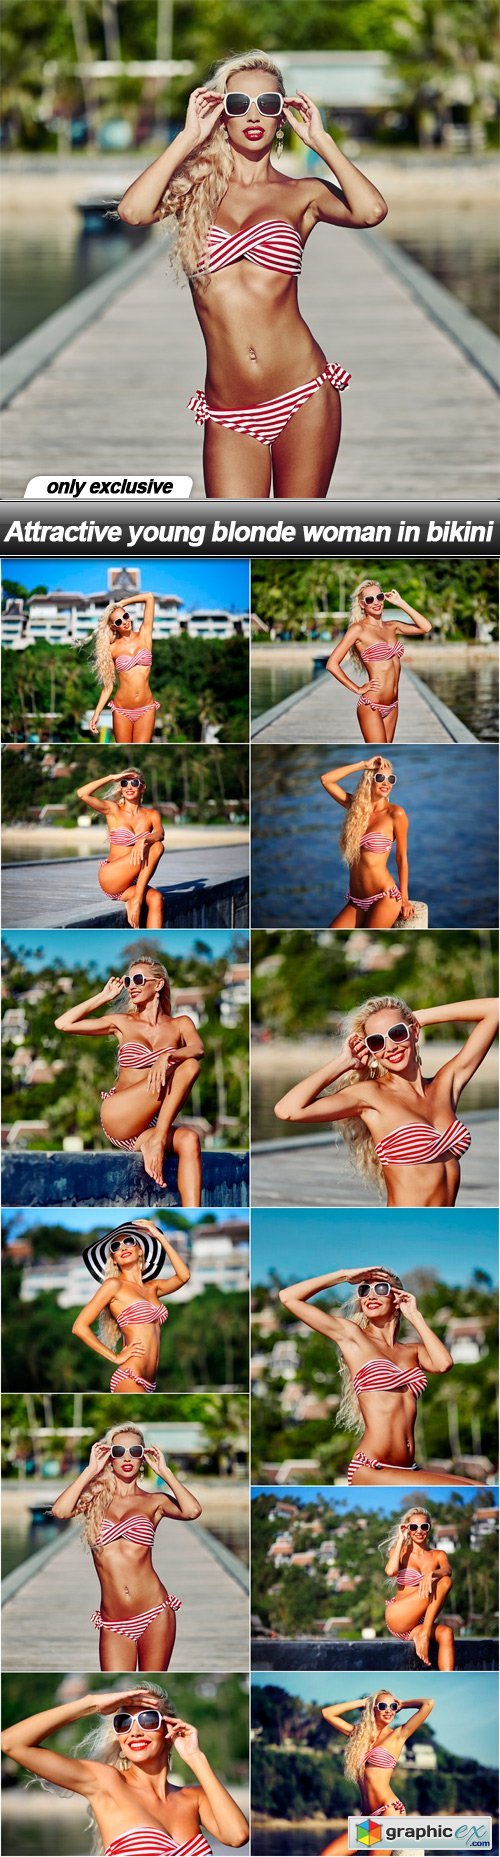 Attractive young blonde woman in bikini - 12 UHQ JPEG